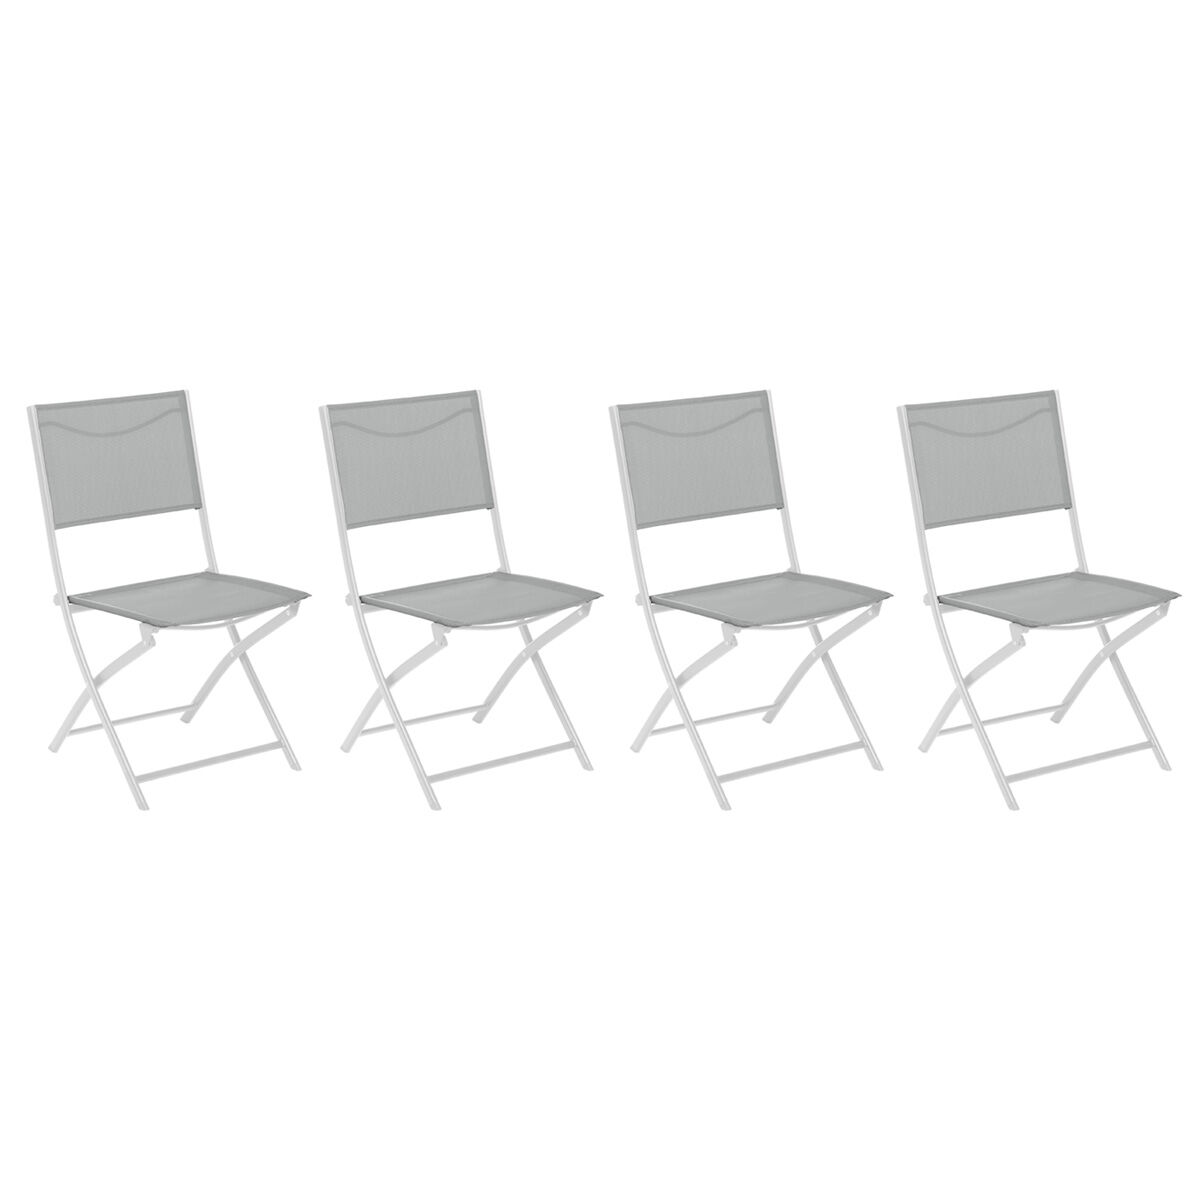 Hespéride Set de 4 sillas plegables jardín MODULA piedra y blanco Acero tratado con epoxi, Texaline Hespéride Gris Galet / Blanc 46 x 52 x 87 cm